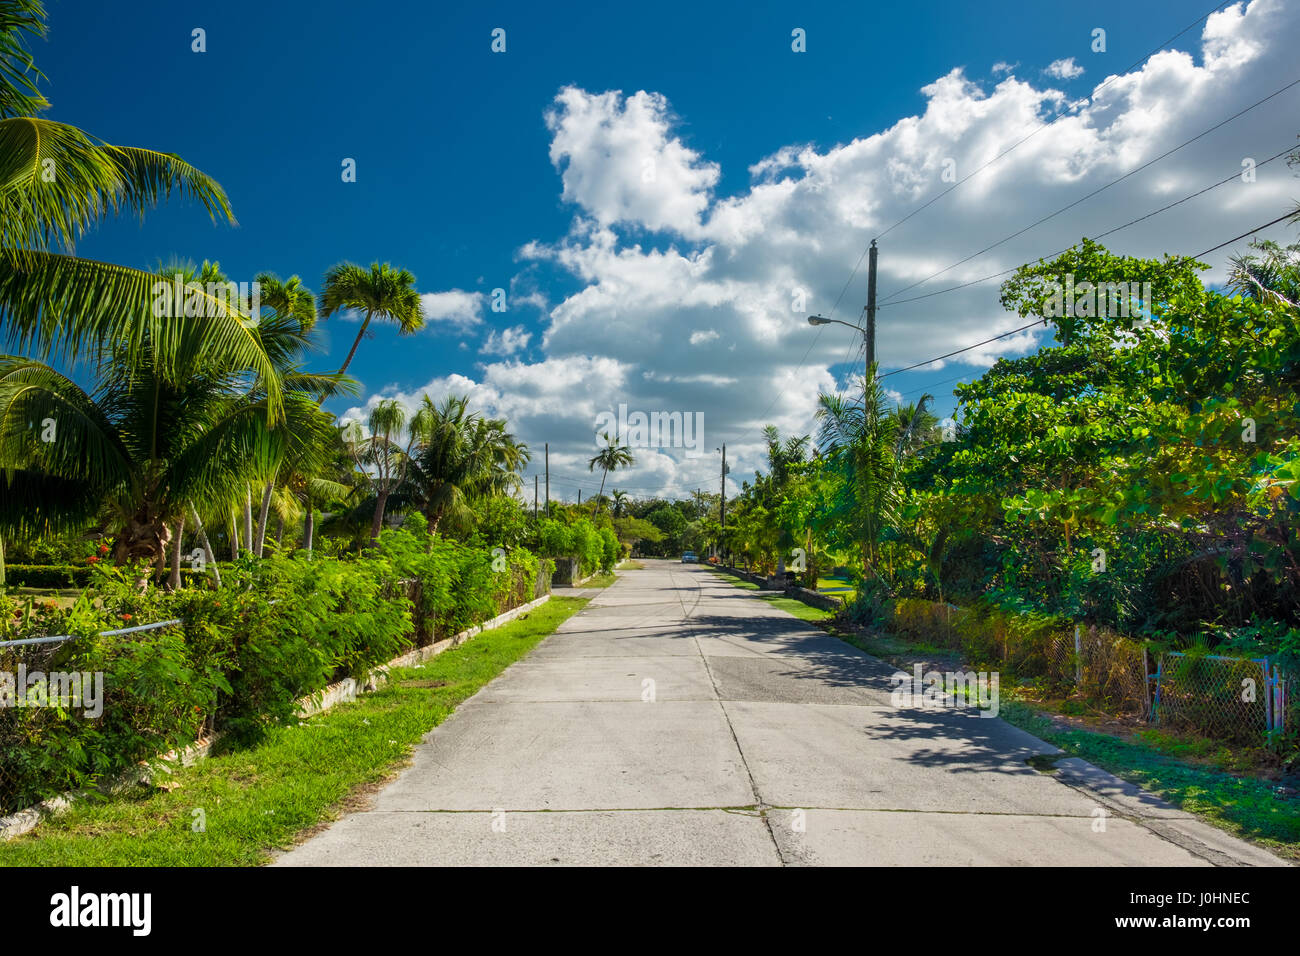 Street dans les Caraïbes avec une végétation luxuriante sur les deux côté de la route, Grand Cayman, Cayman Islands Banque D'Images